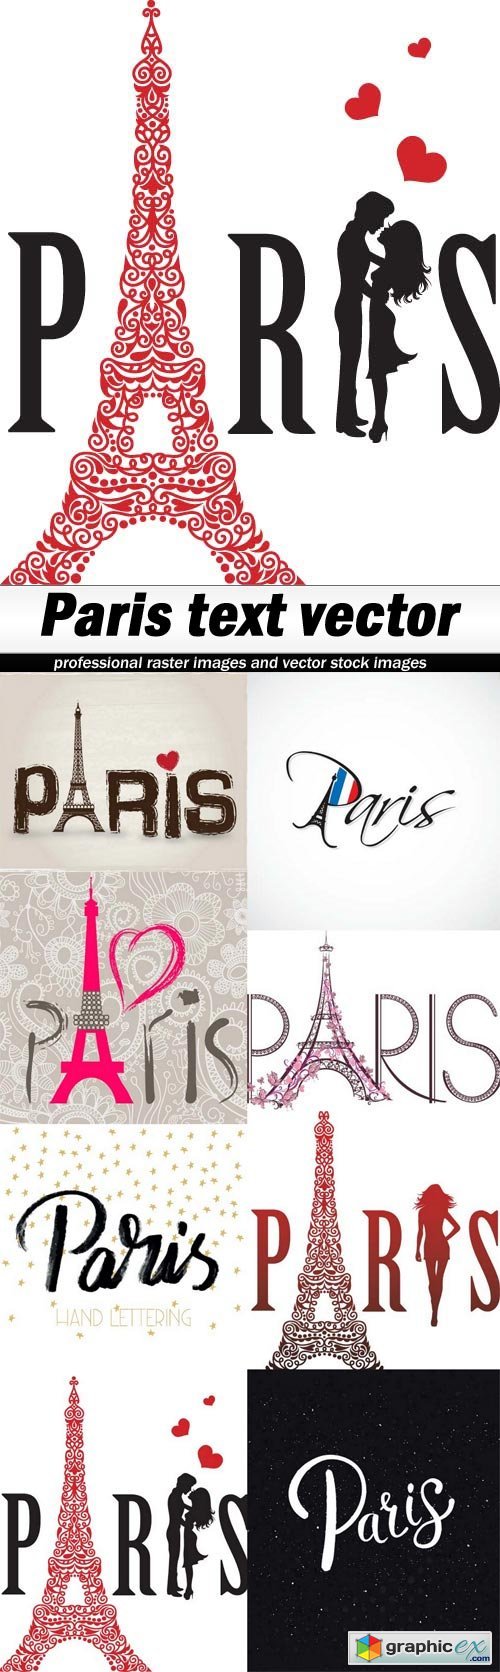 Paris text vector